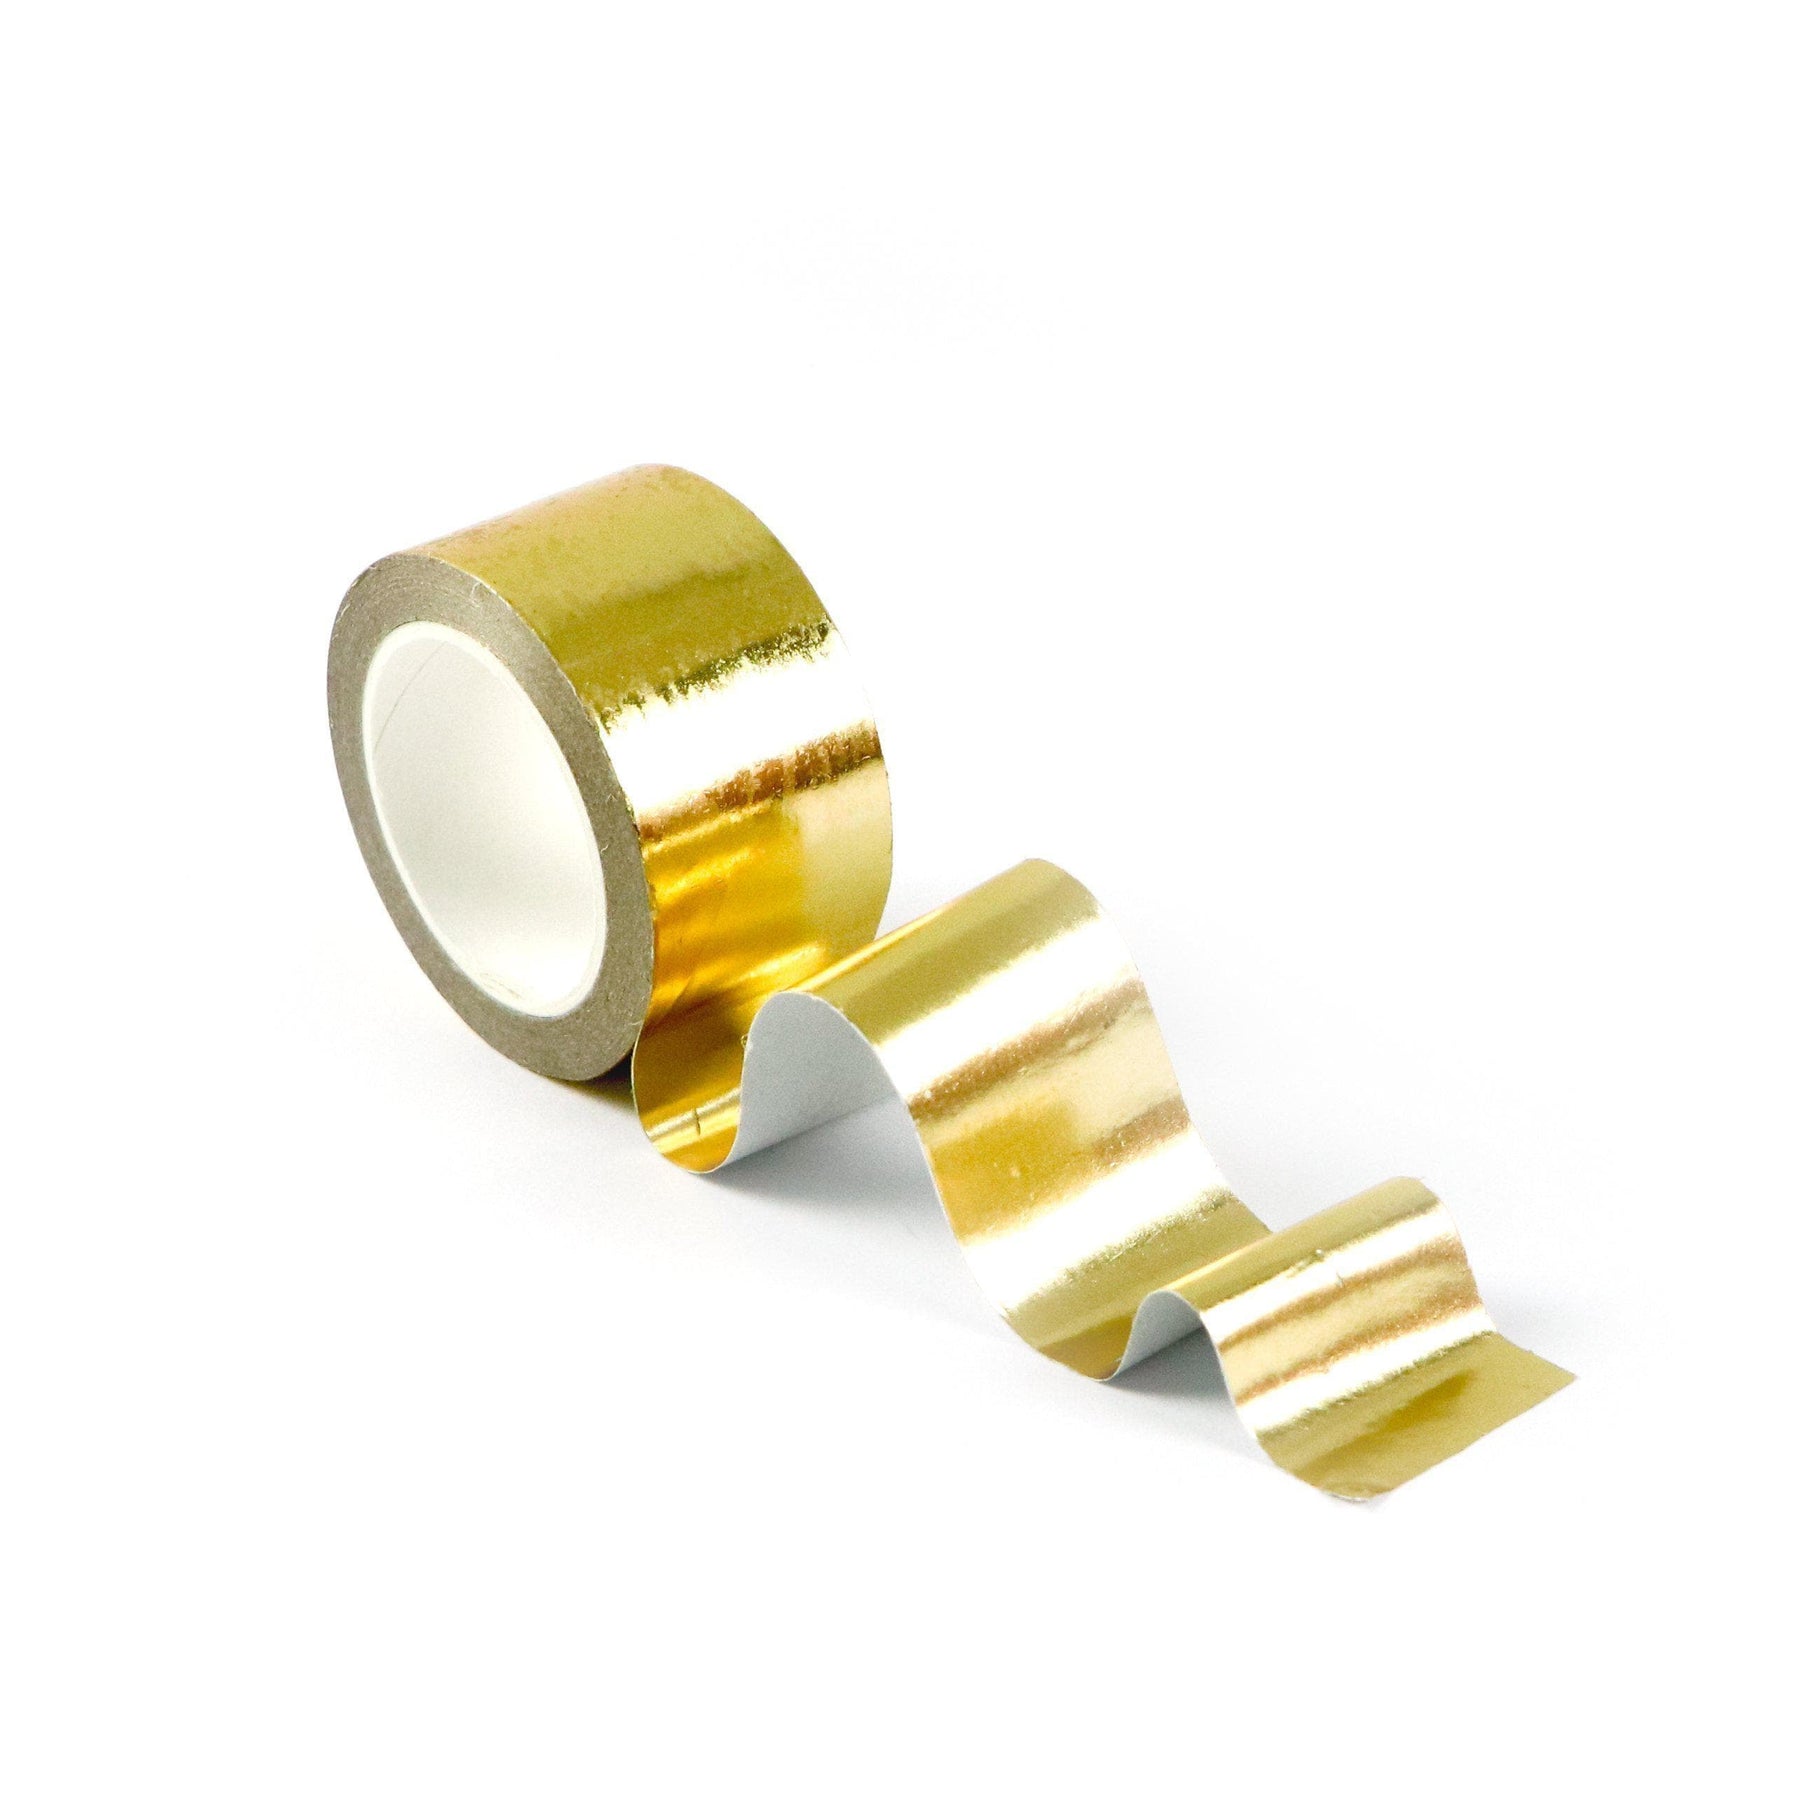 24 Rolls Washi Tape Set Foil Gold Skinny Decorative Masking Washi